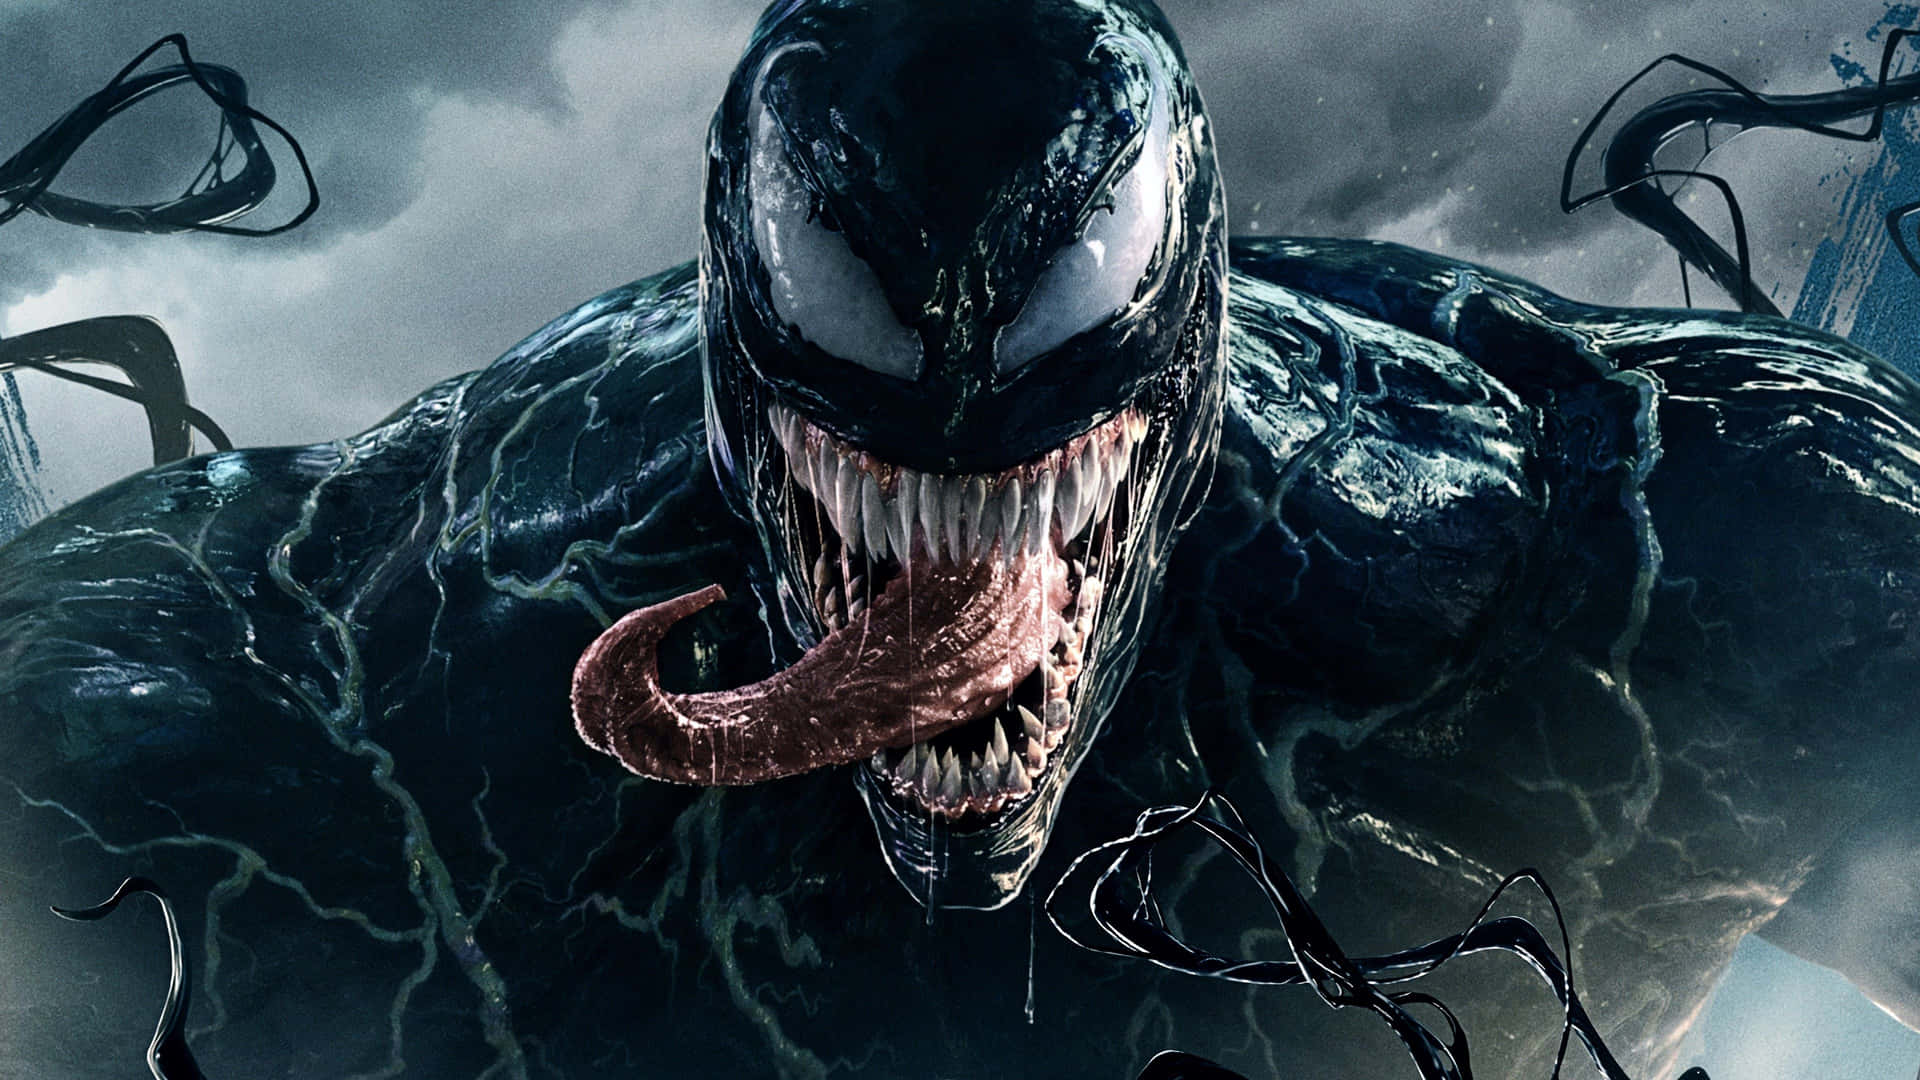 Derbösartige Superbösewicht Venom.